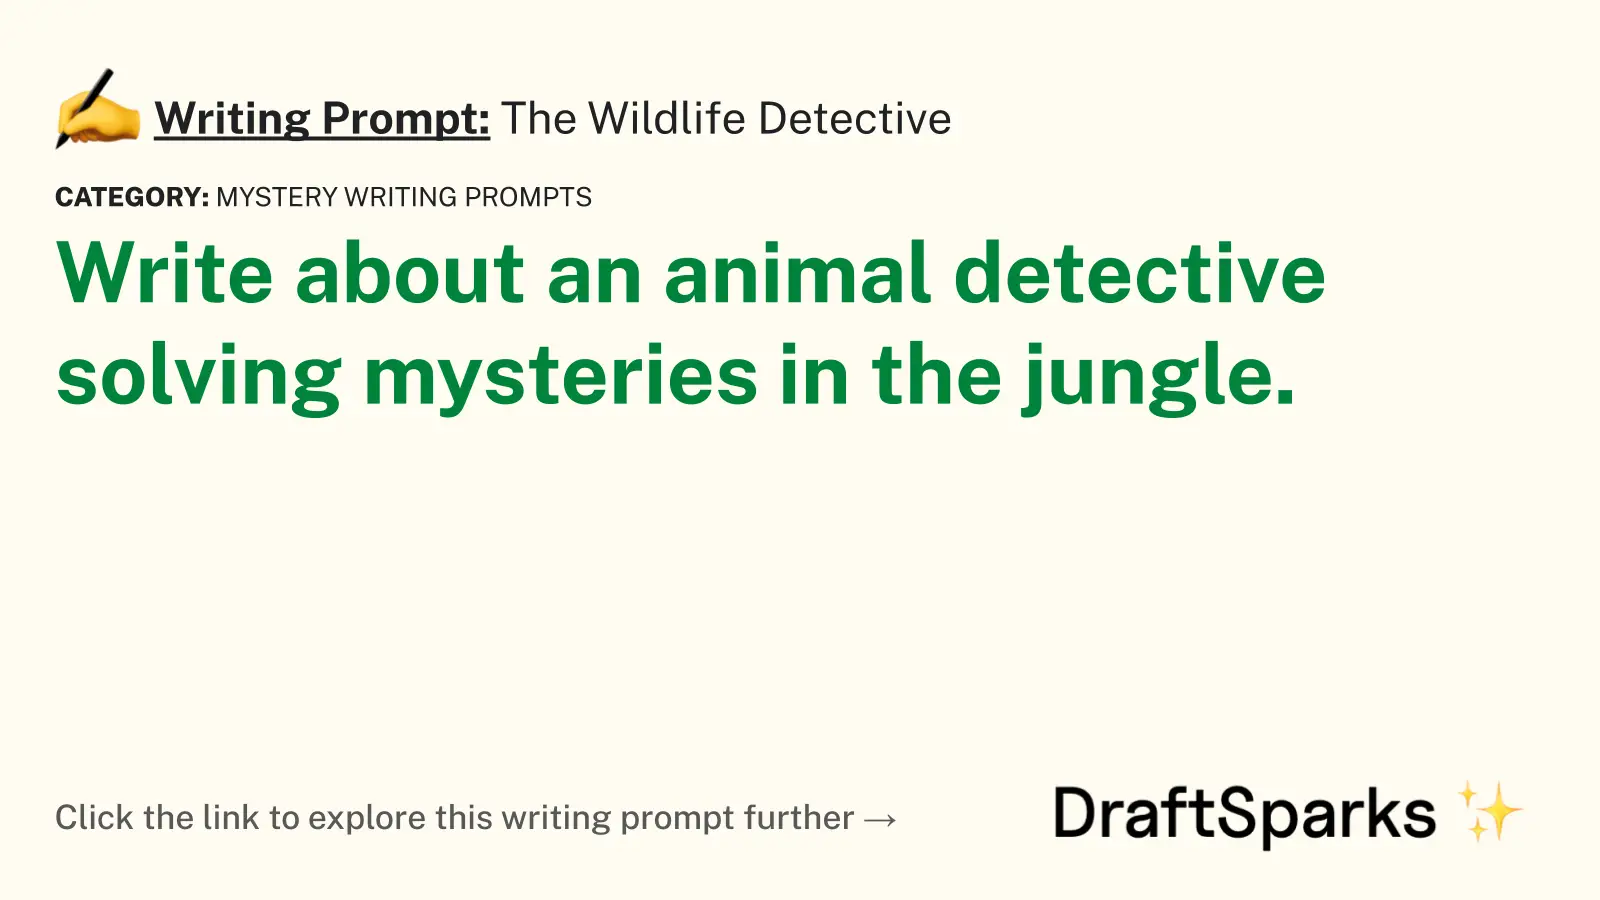 The Wildlife Detective